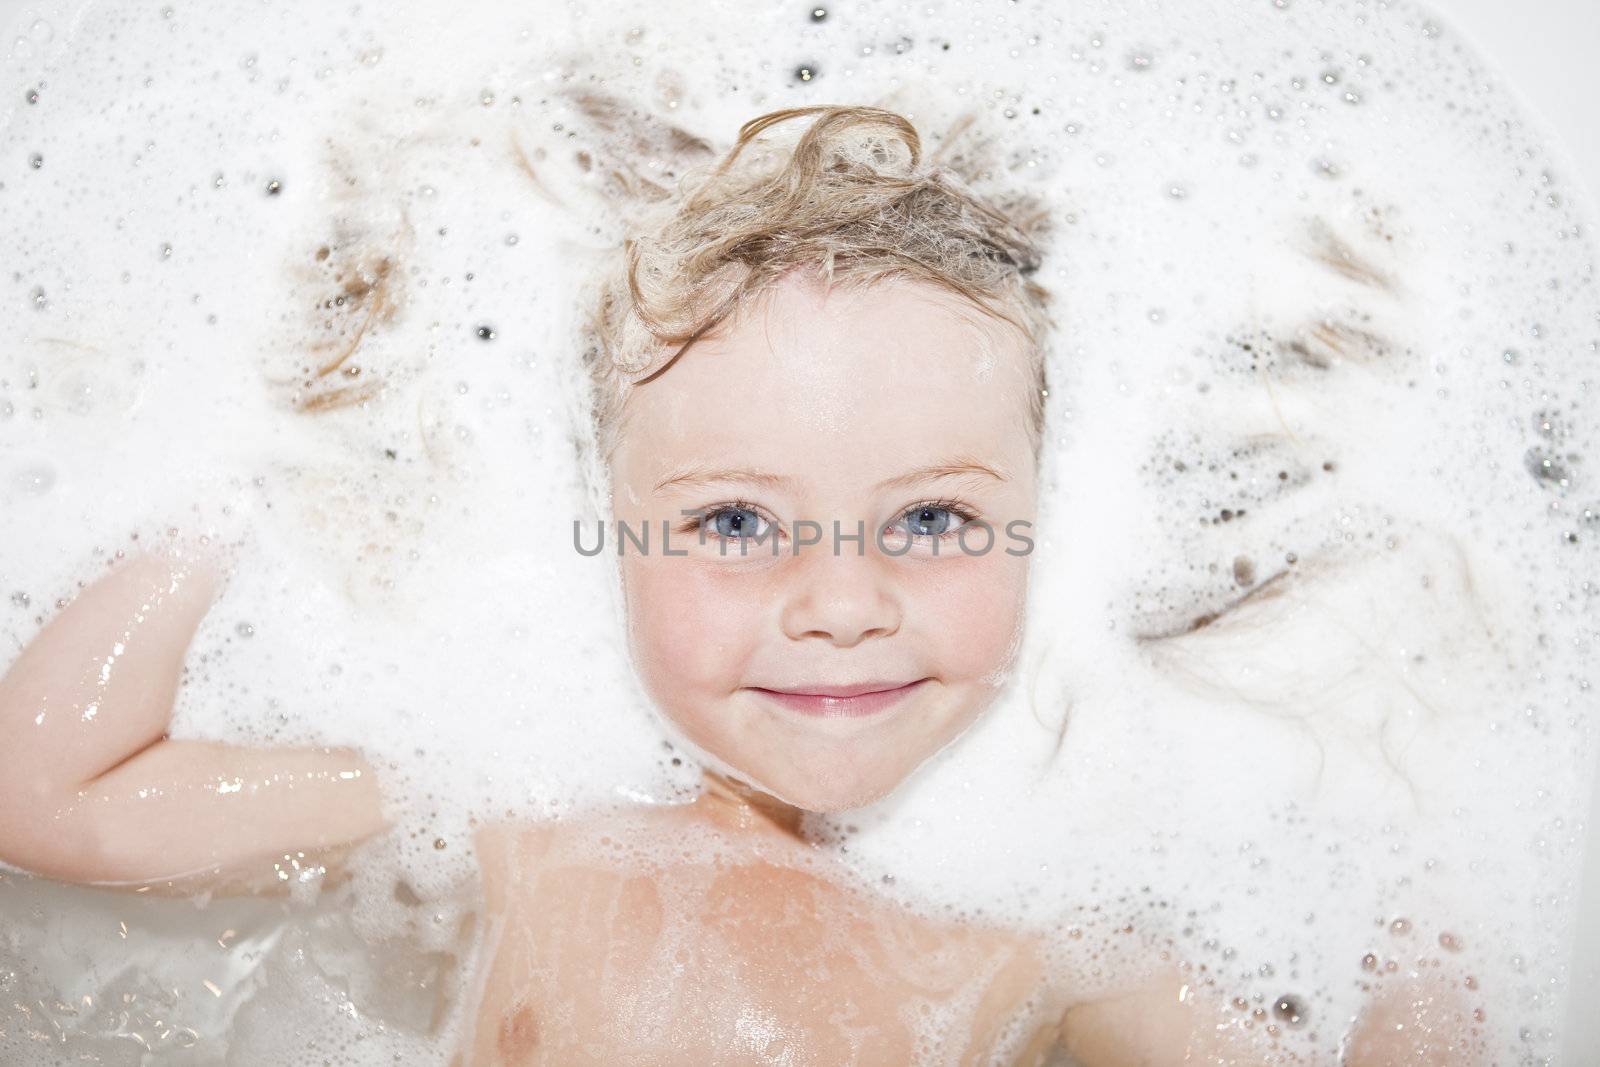 Girl in a bubble bath by gemenacom